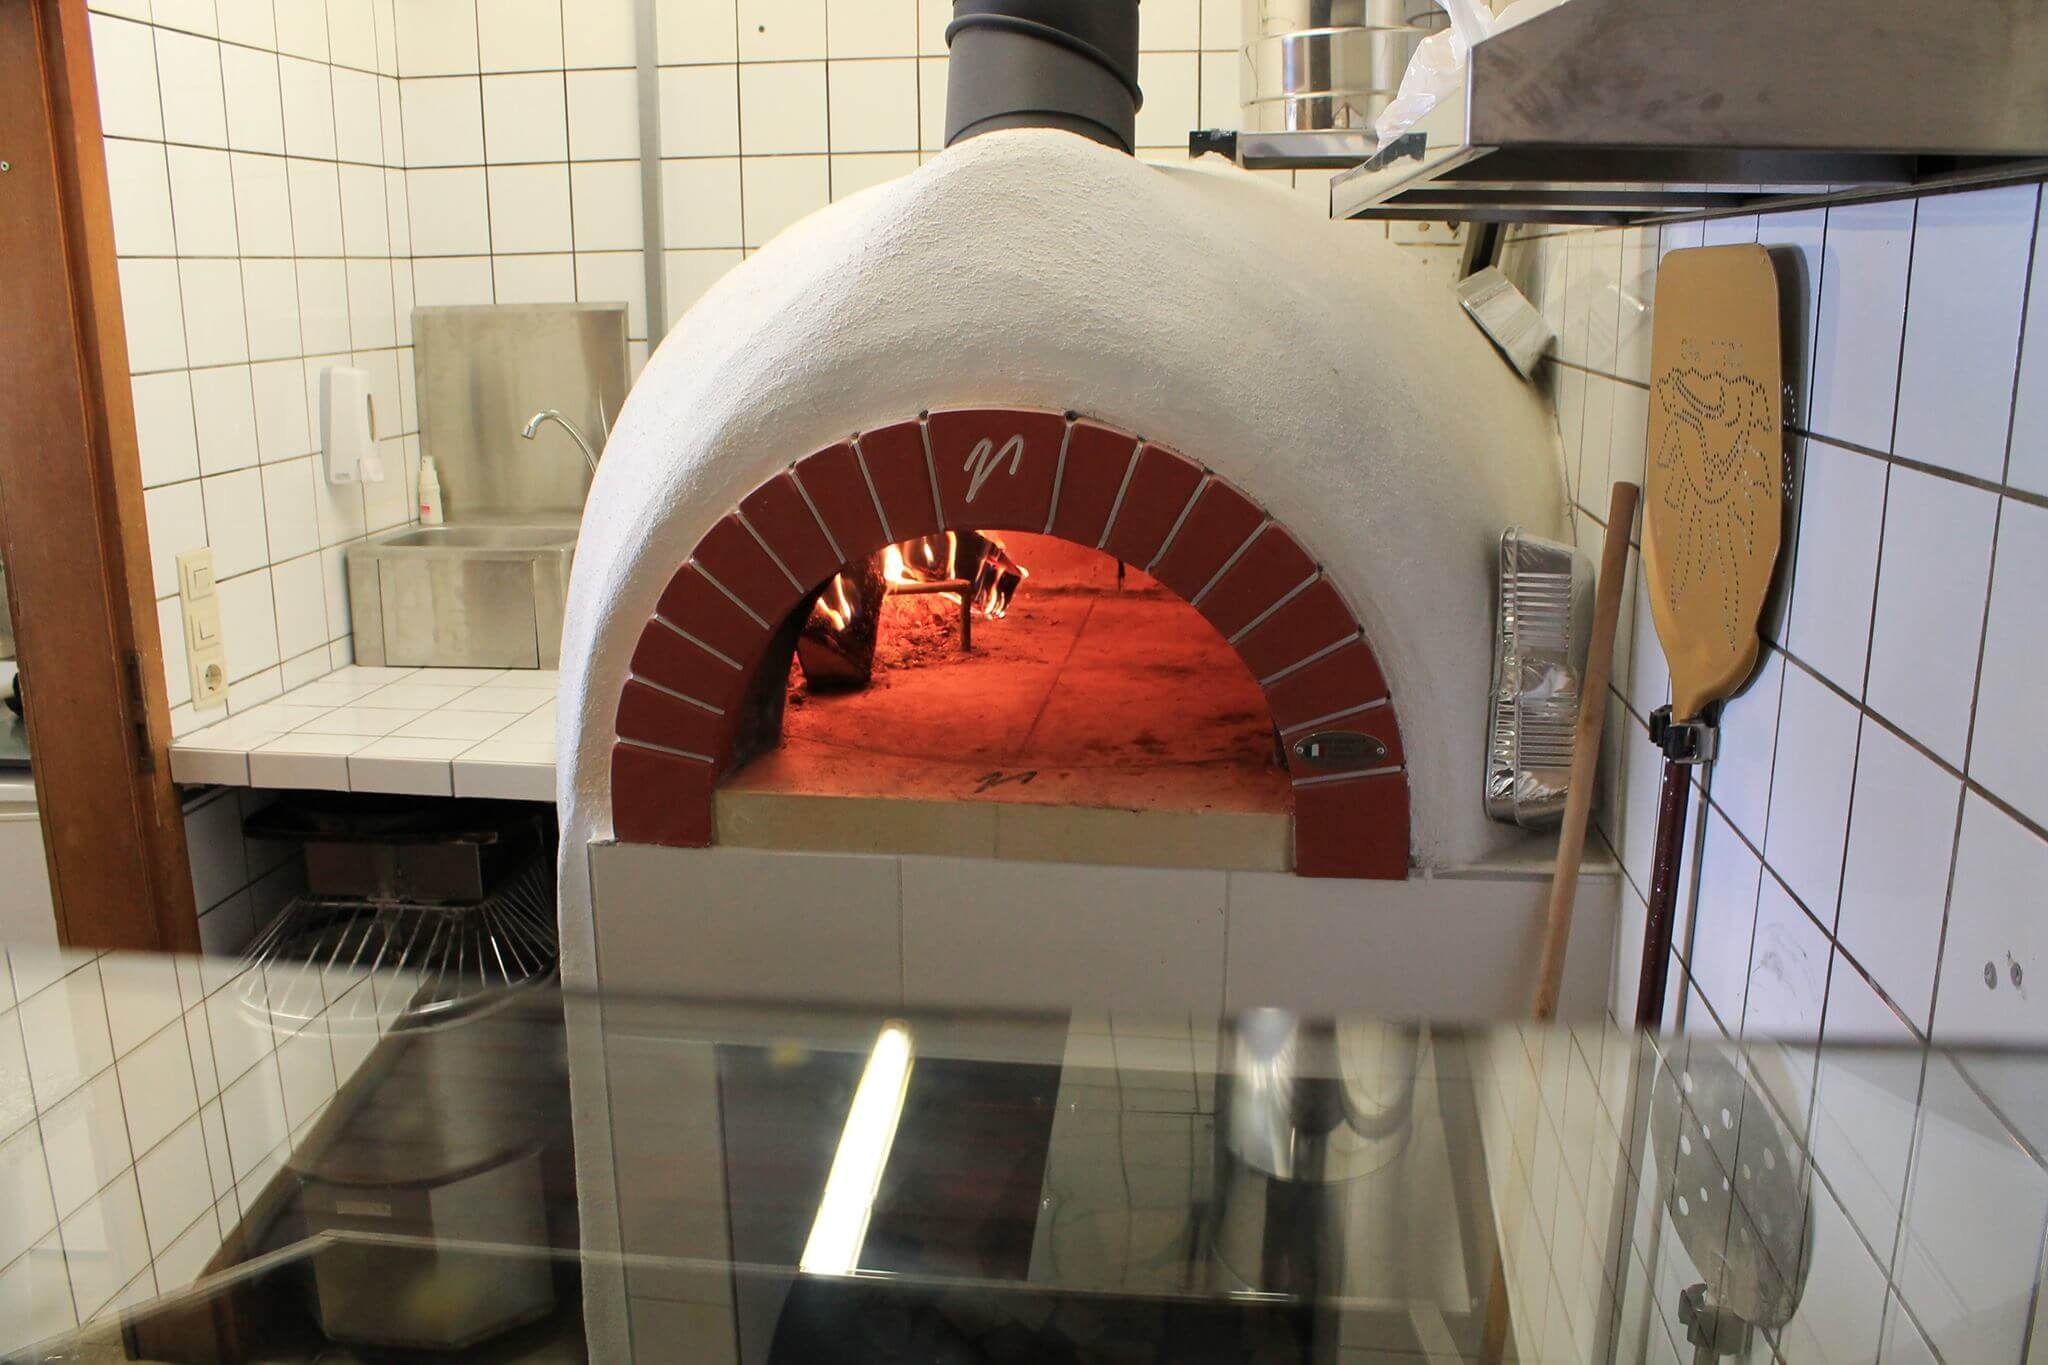 Pizzaofen Bausatz für Gastro: Valoriani Vesuvius GR, Holz und Gas, 90cm Durchmesser